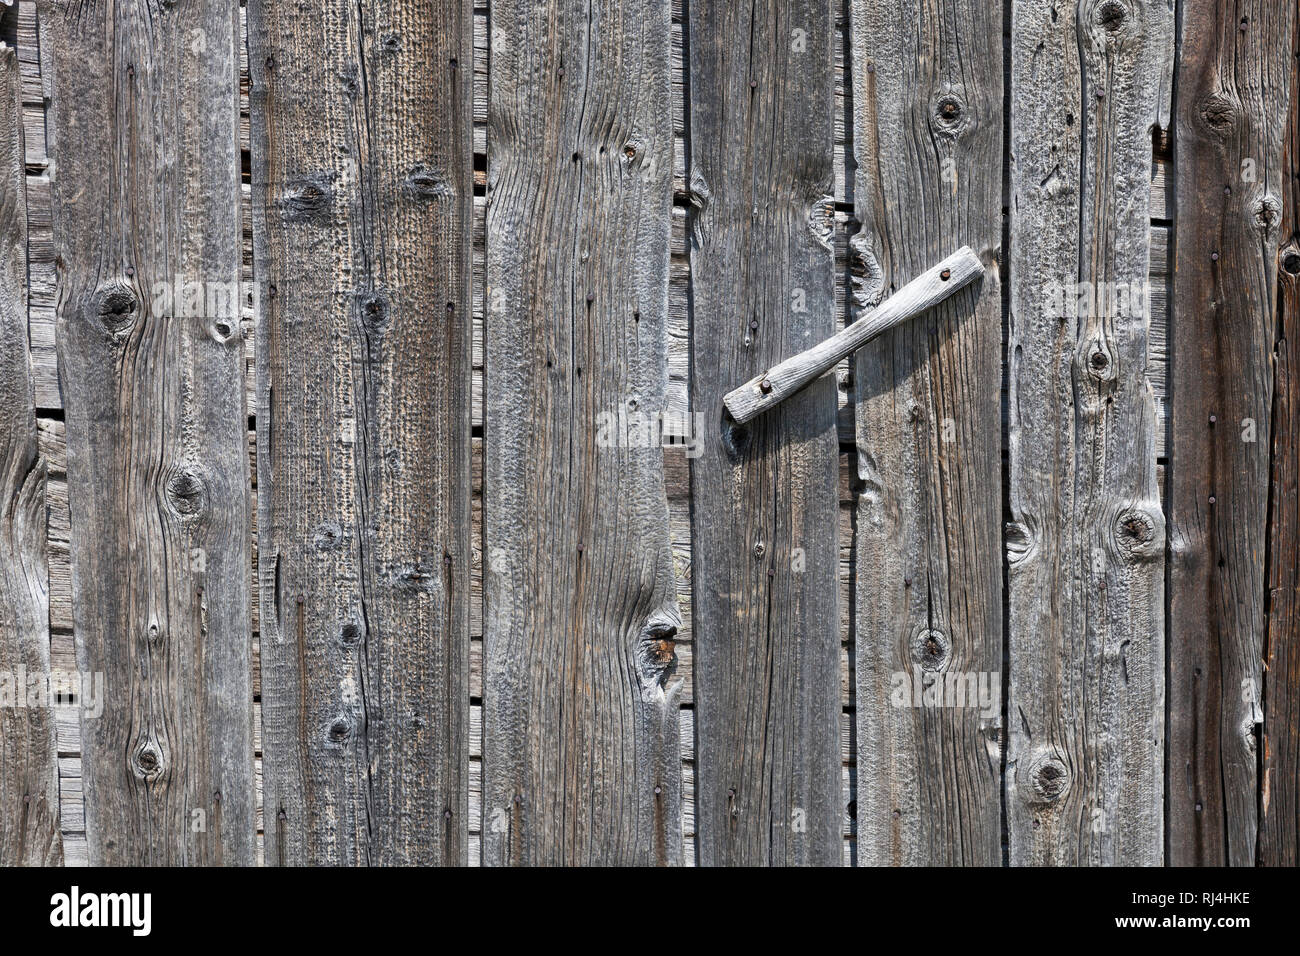 Holzwand mit T?rgriff aus alten unbehandelten vergrauten Brettern, S?dtirol, Italien, Europa, Foto Stock